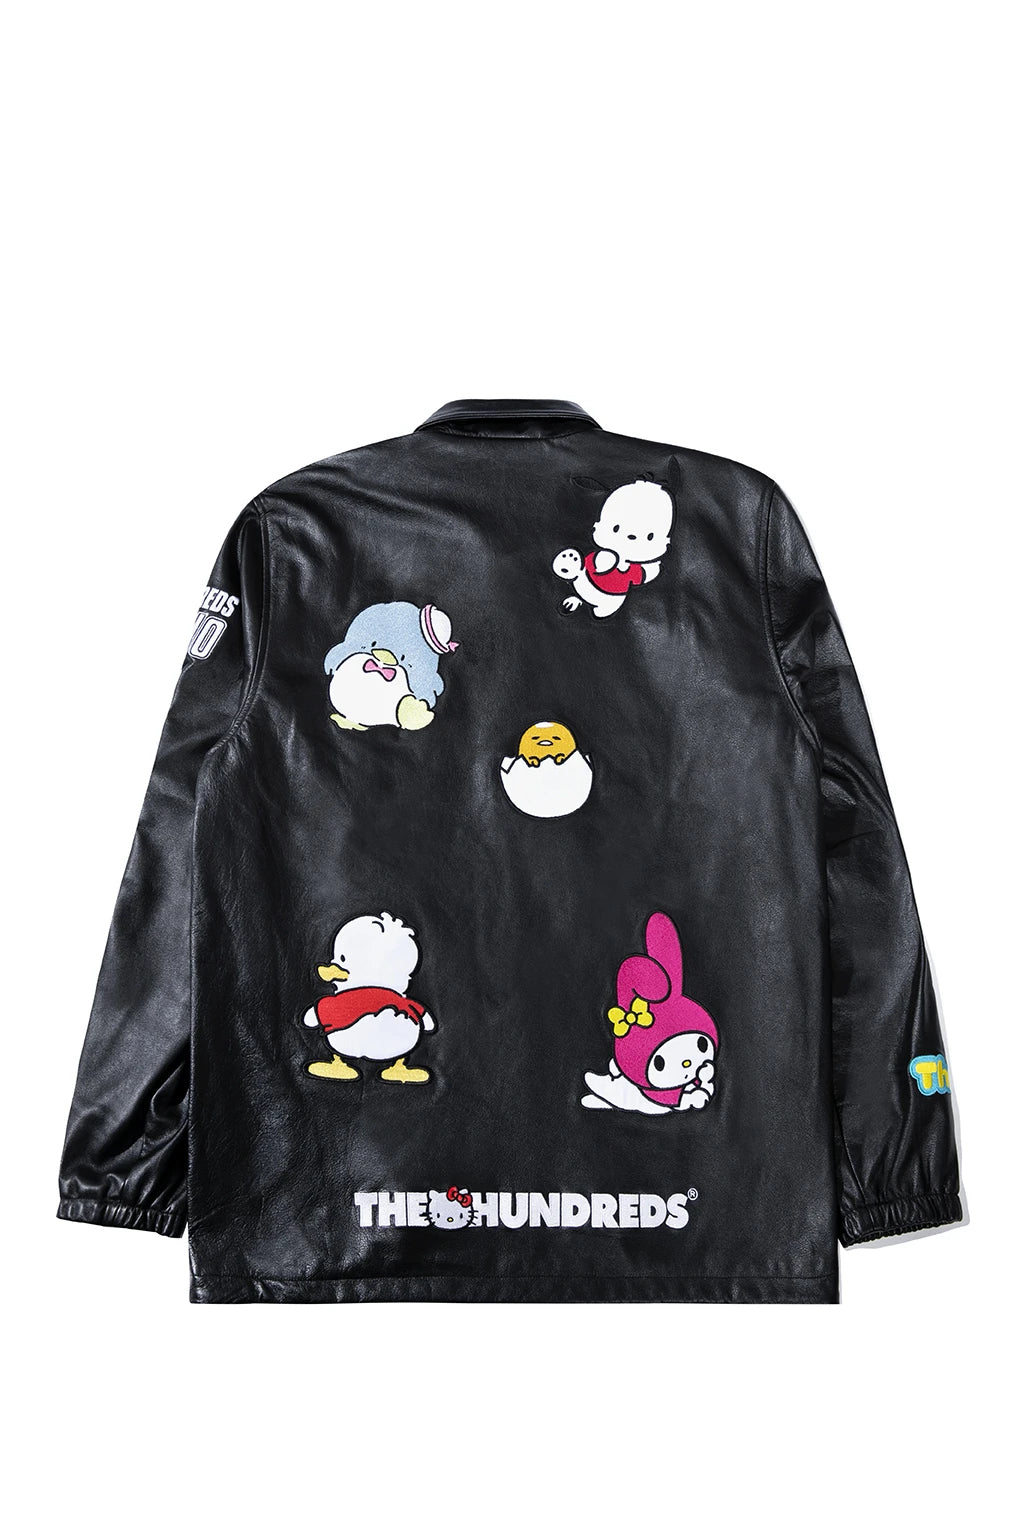 The Hundreds x Sanrio Sponsor Coach Jacket